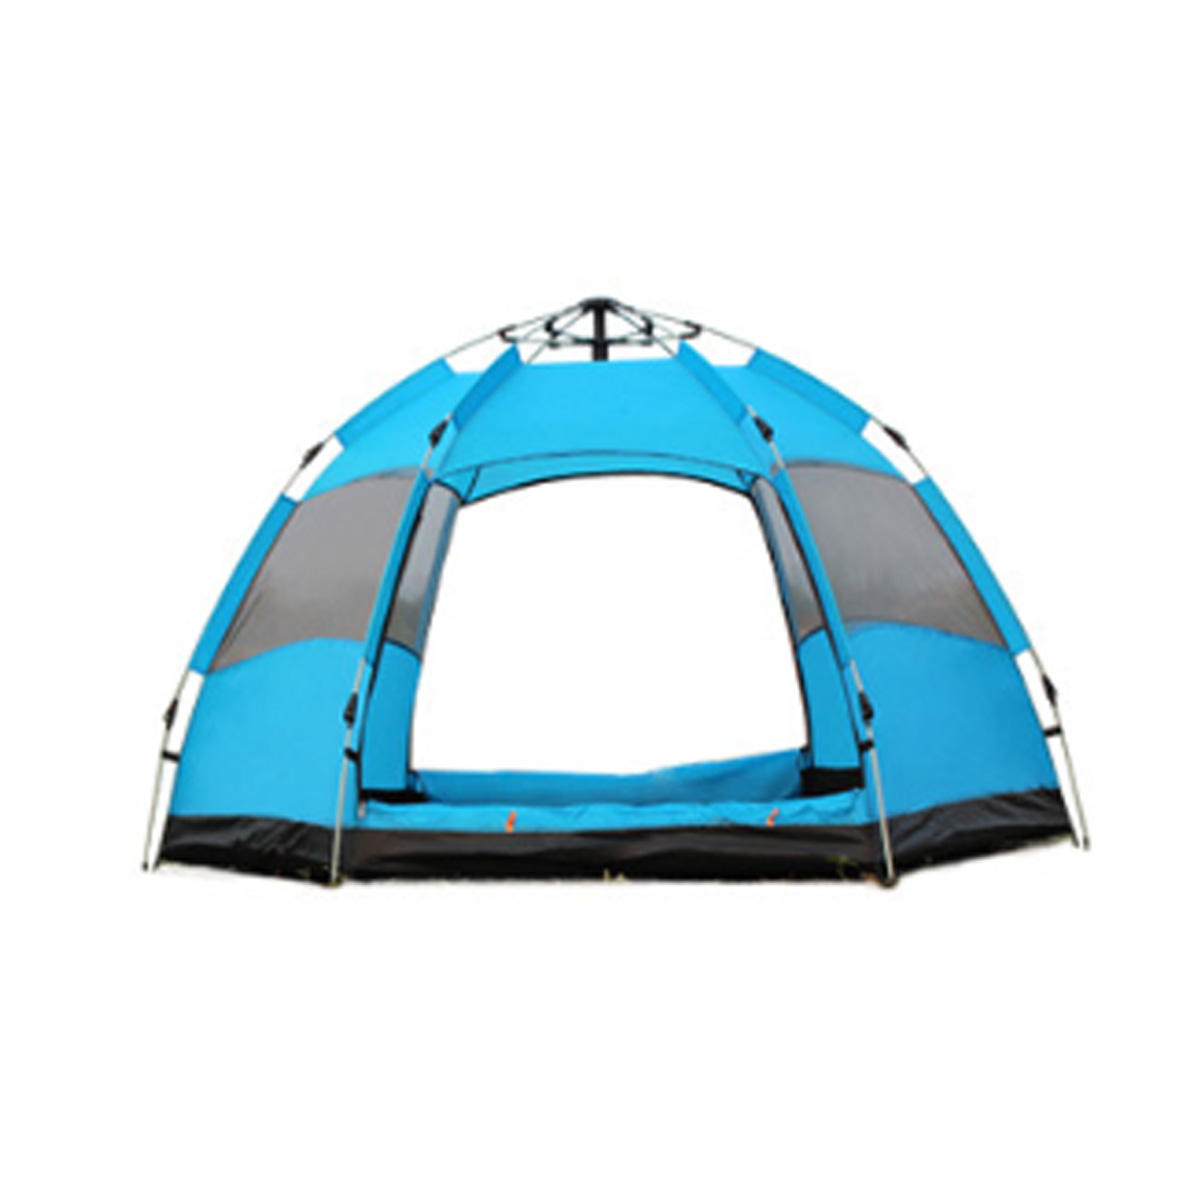 Tente automatique imperméable pour 3 à 5 personnes, ouverture rapide, idéale pour le camping, la randonnée et la pêche en plein air, avec pare-soleil - orange / vert / bleu.